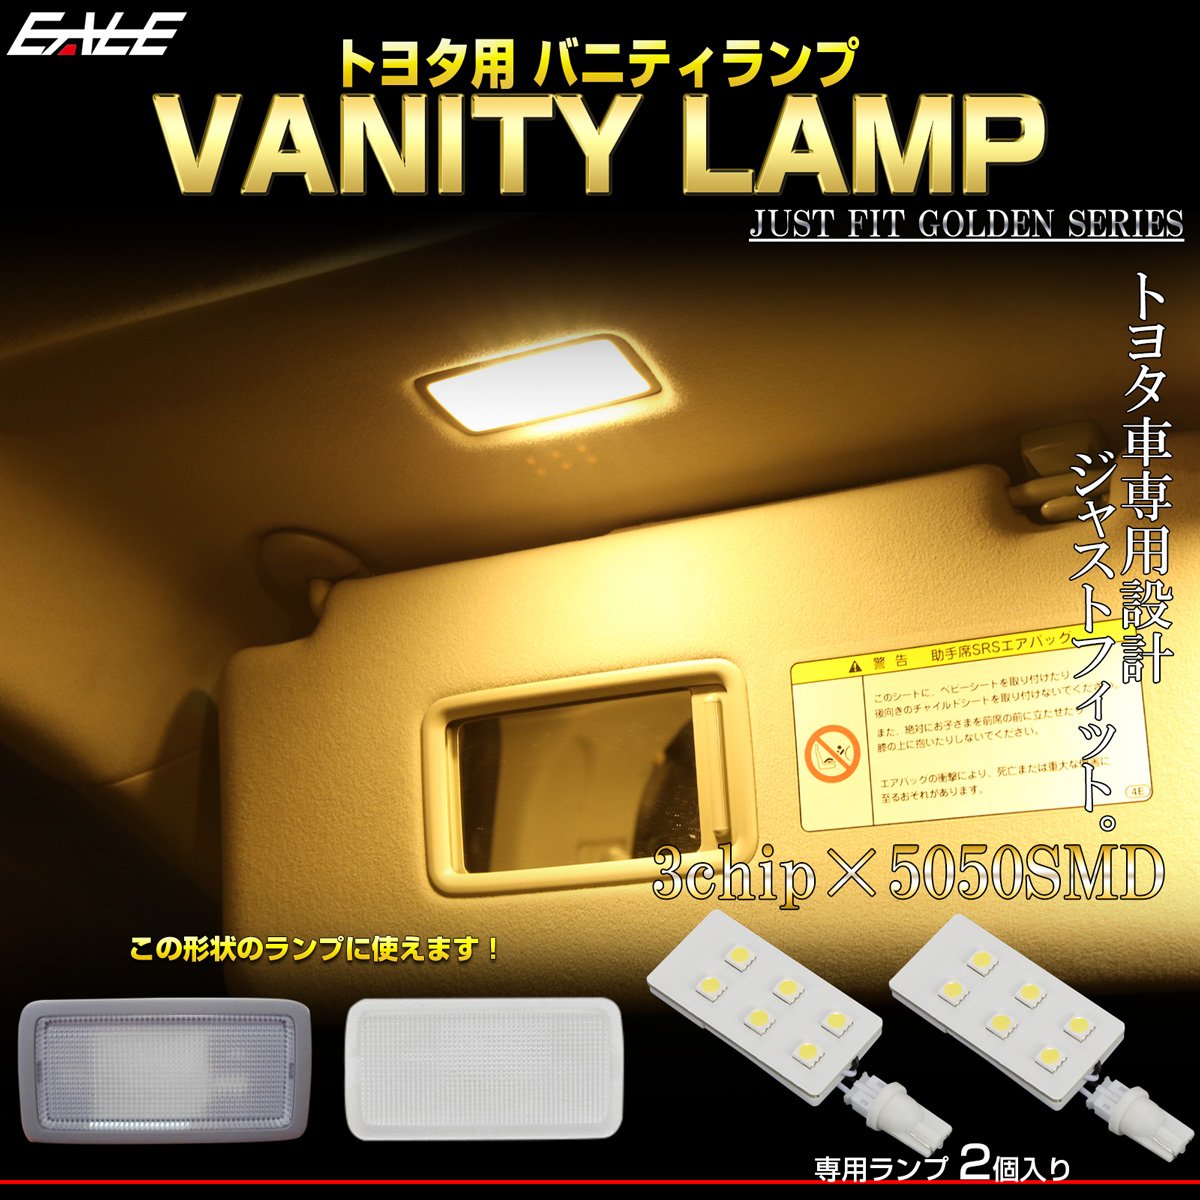 トヨタ汎用 LED バニティランプ 専用設計 ウォームホワイト 3000K 電球色 ルームランプ 2個セット R-504